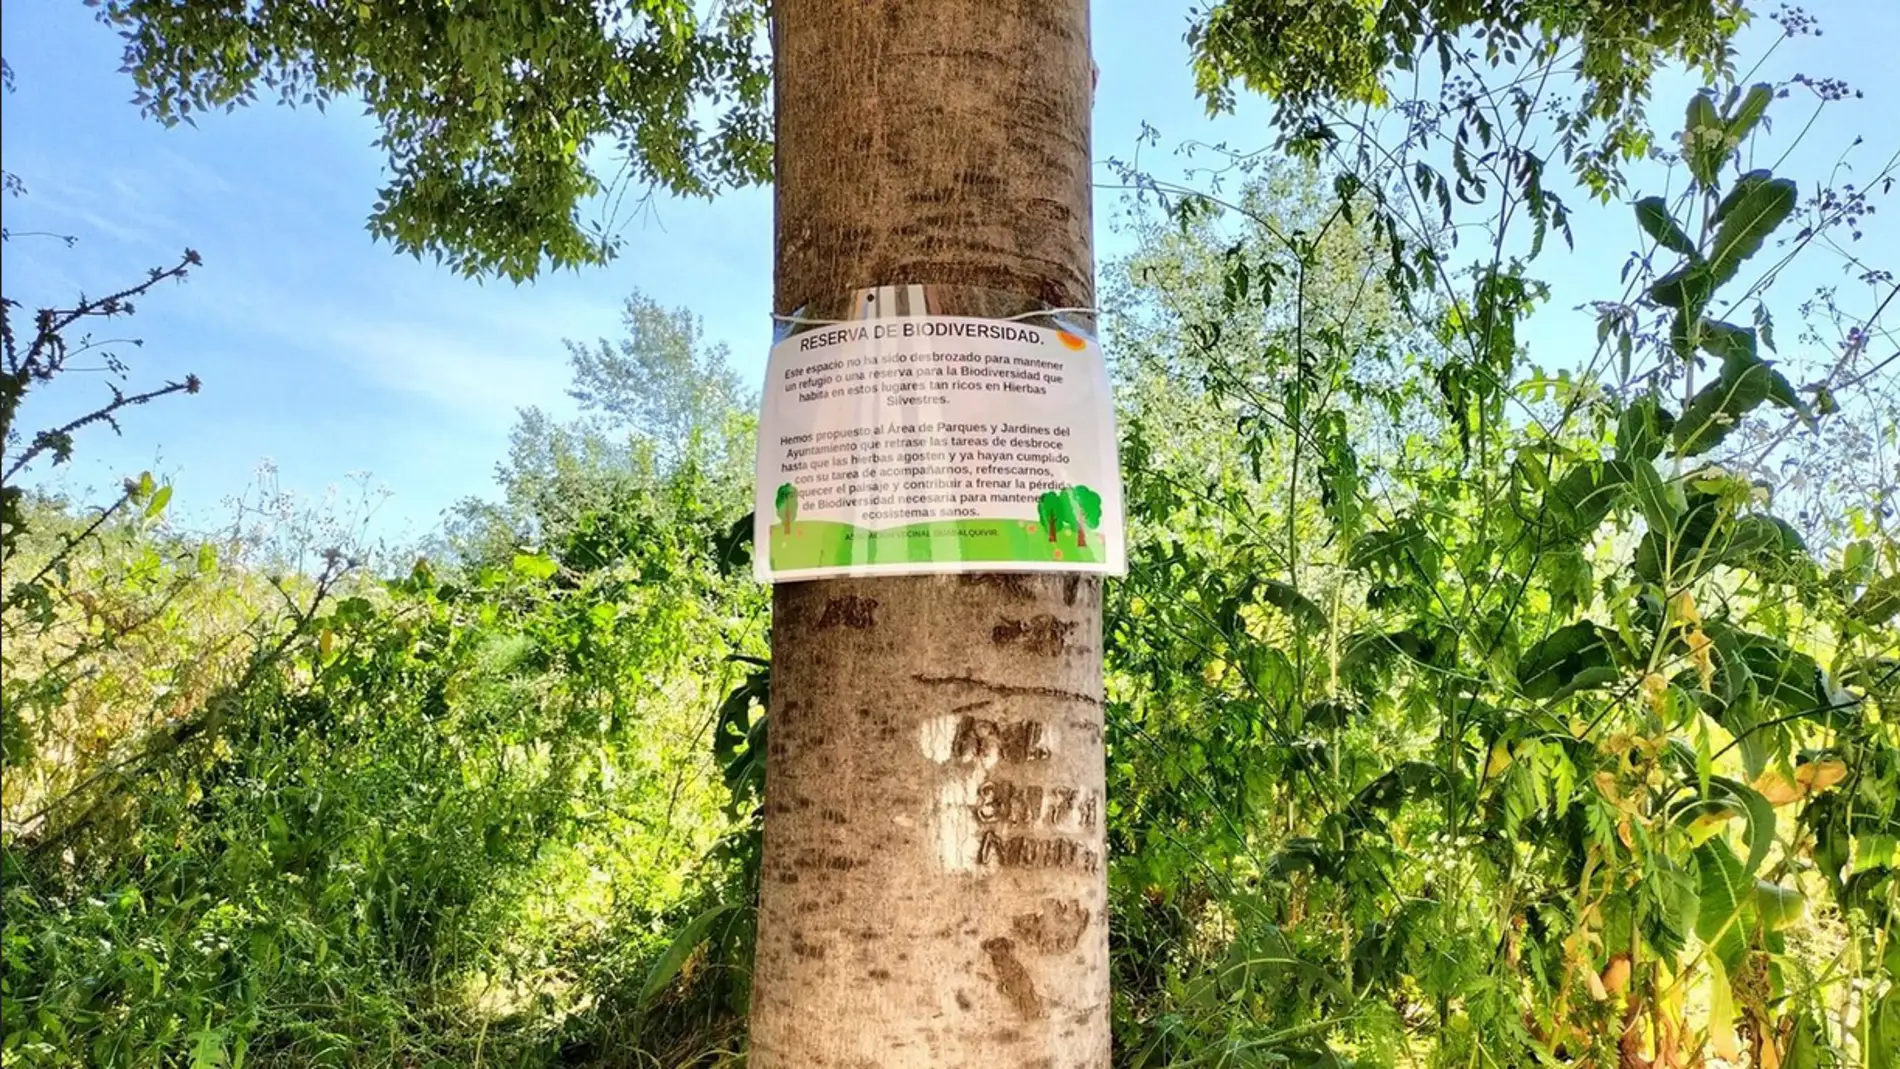 Los vecinos de Fray Albino y Campo de la Verdad señalizan junto al río una "reserva de biodiversidad" 